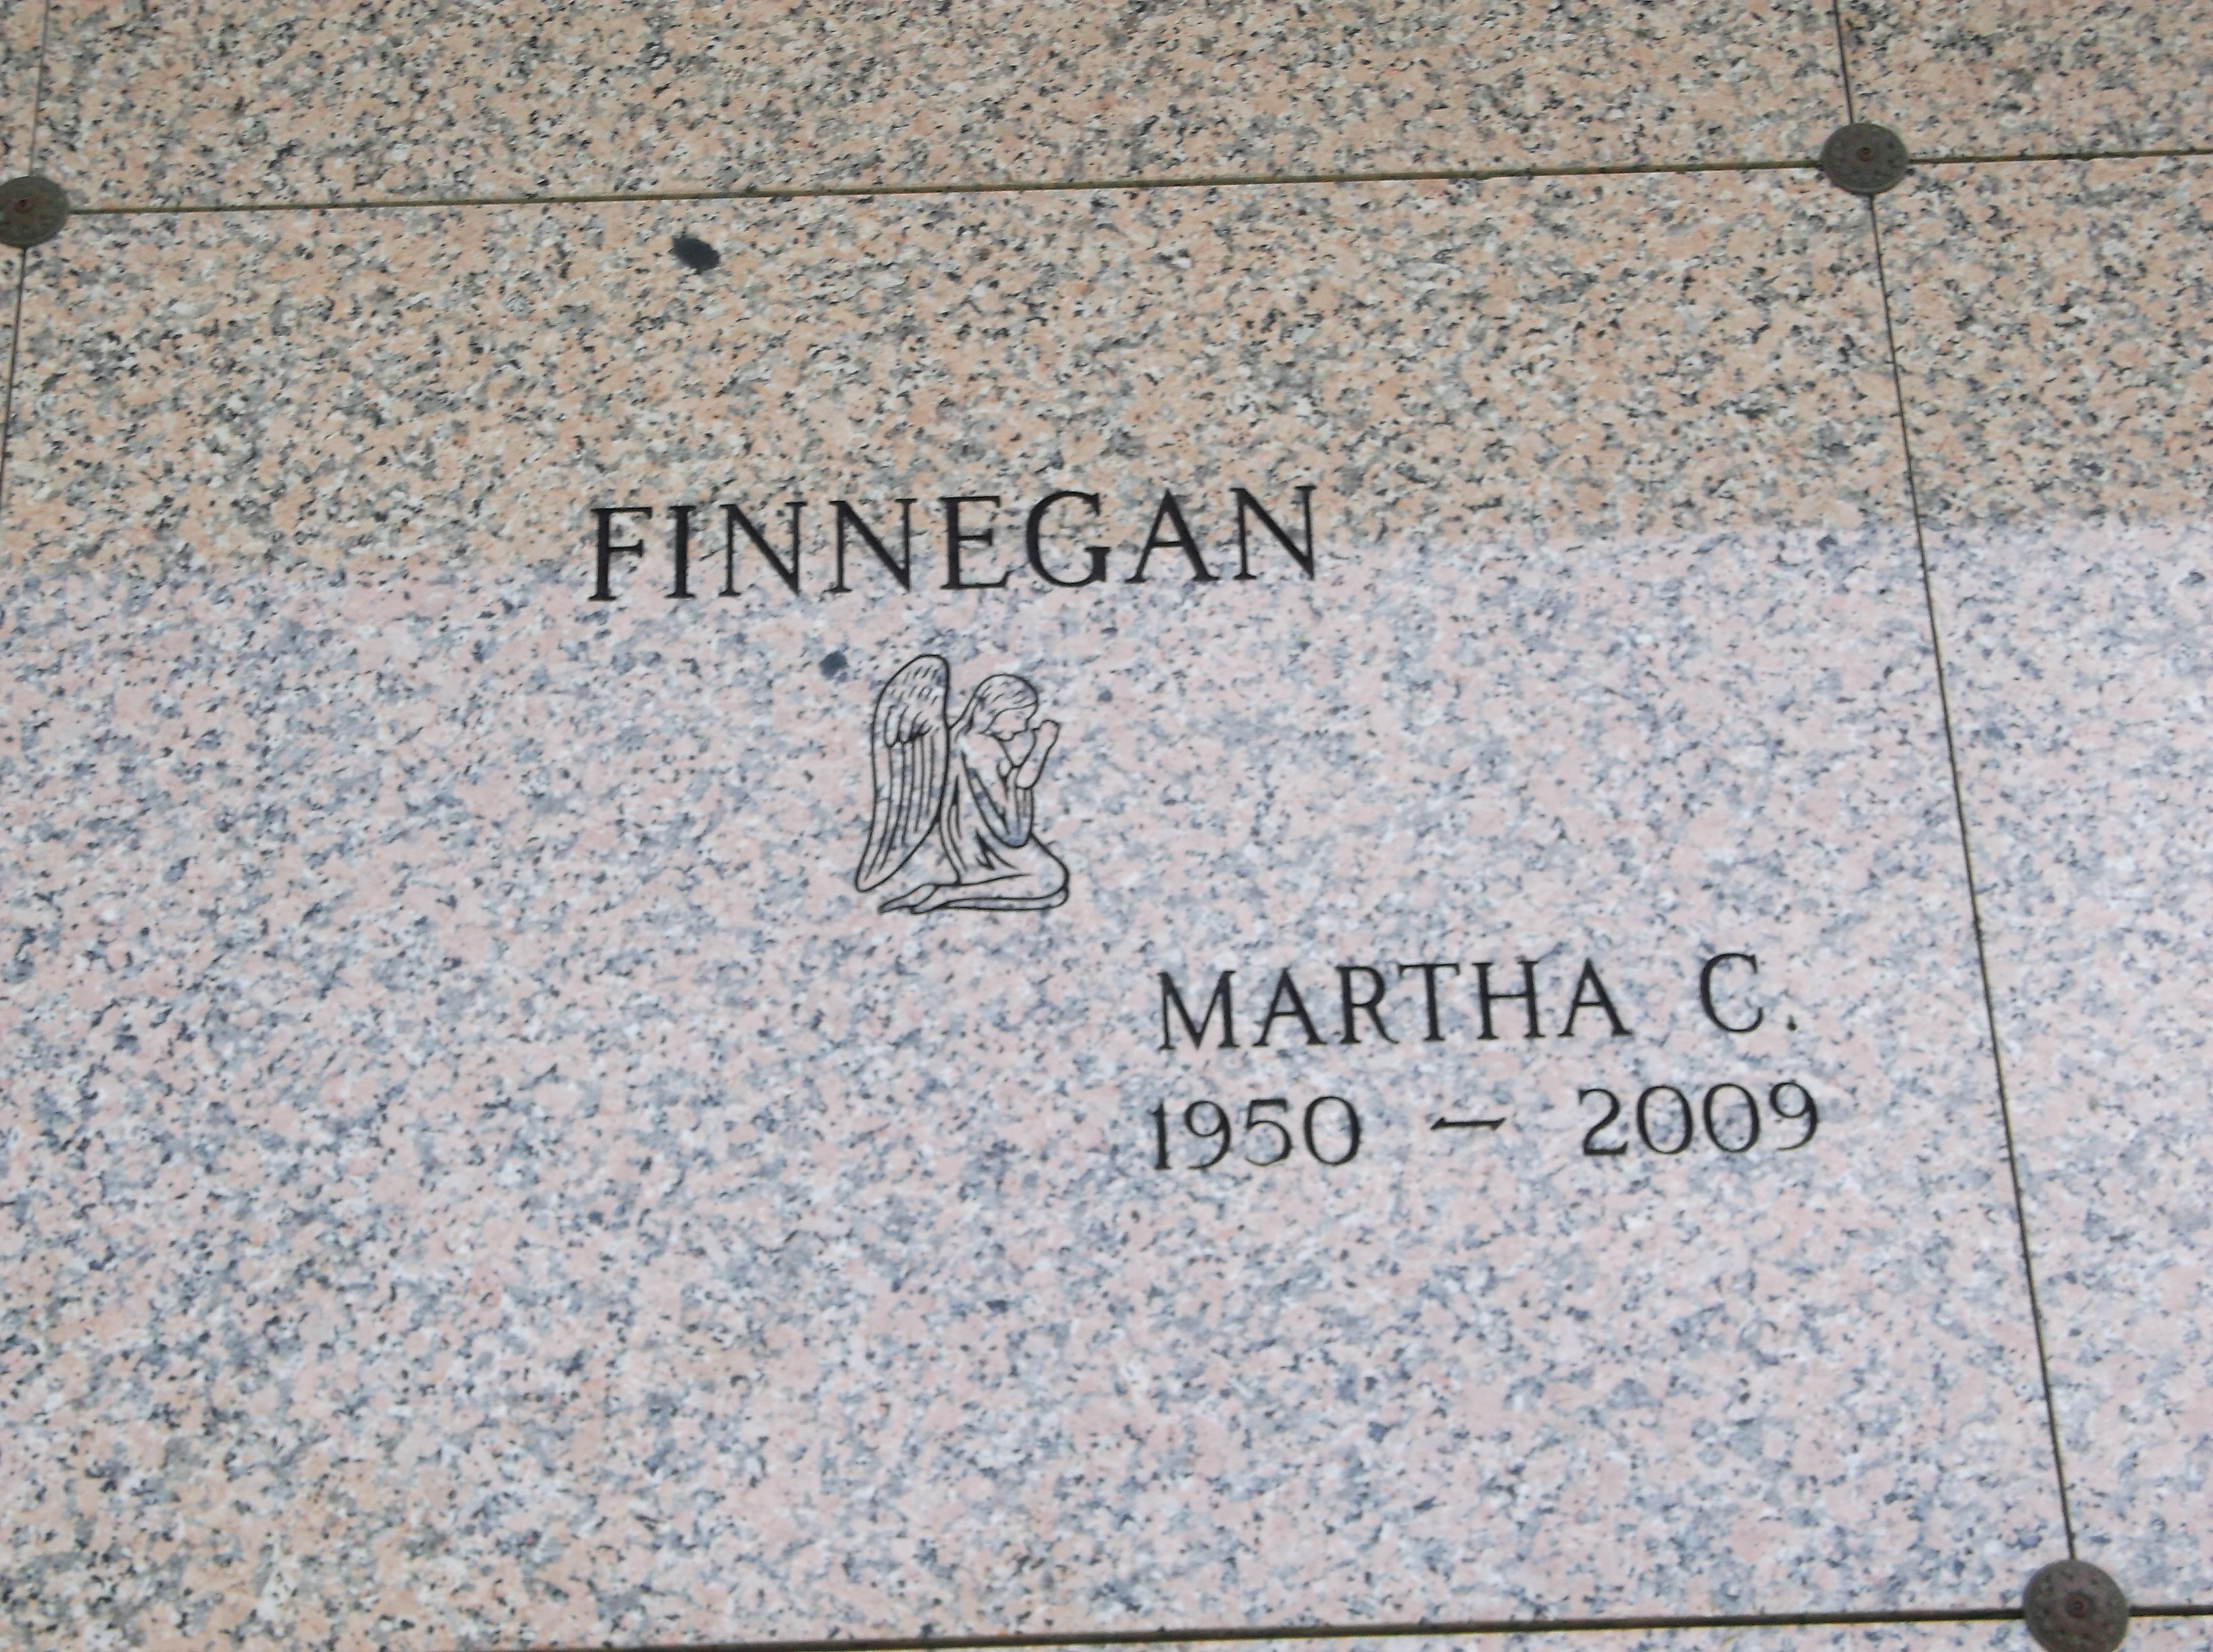 Martha C Finnegan